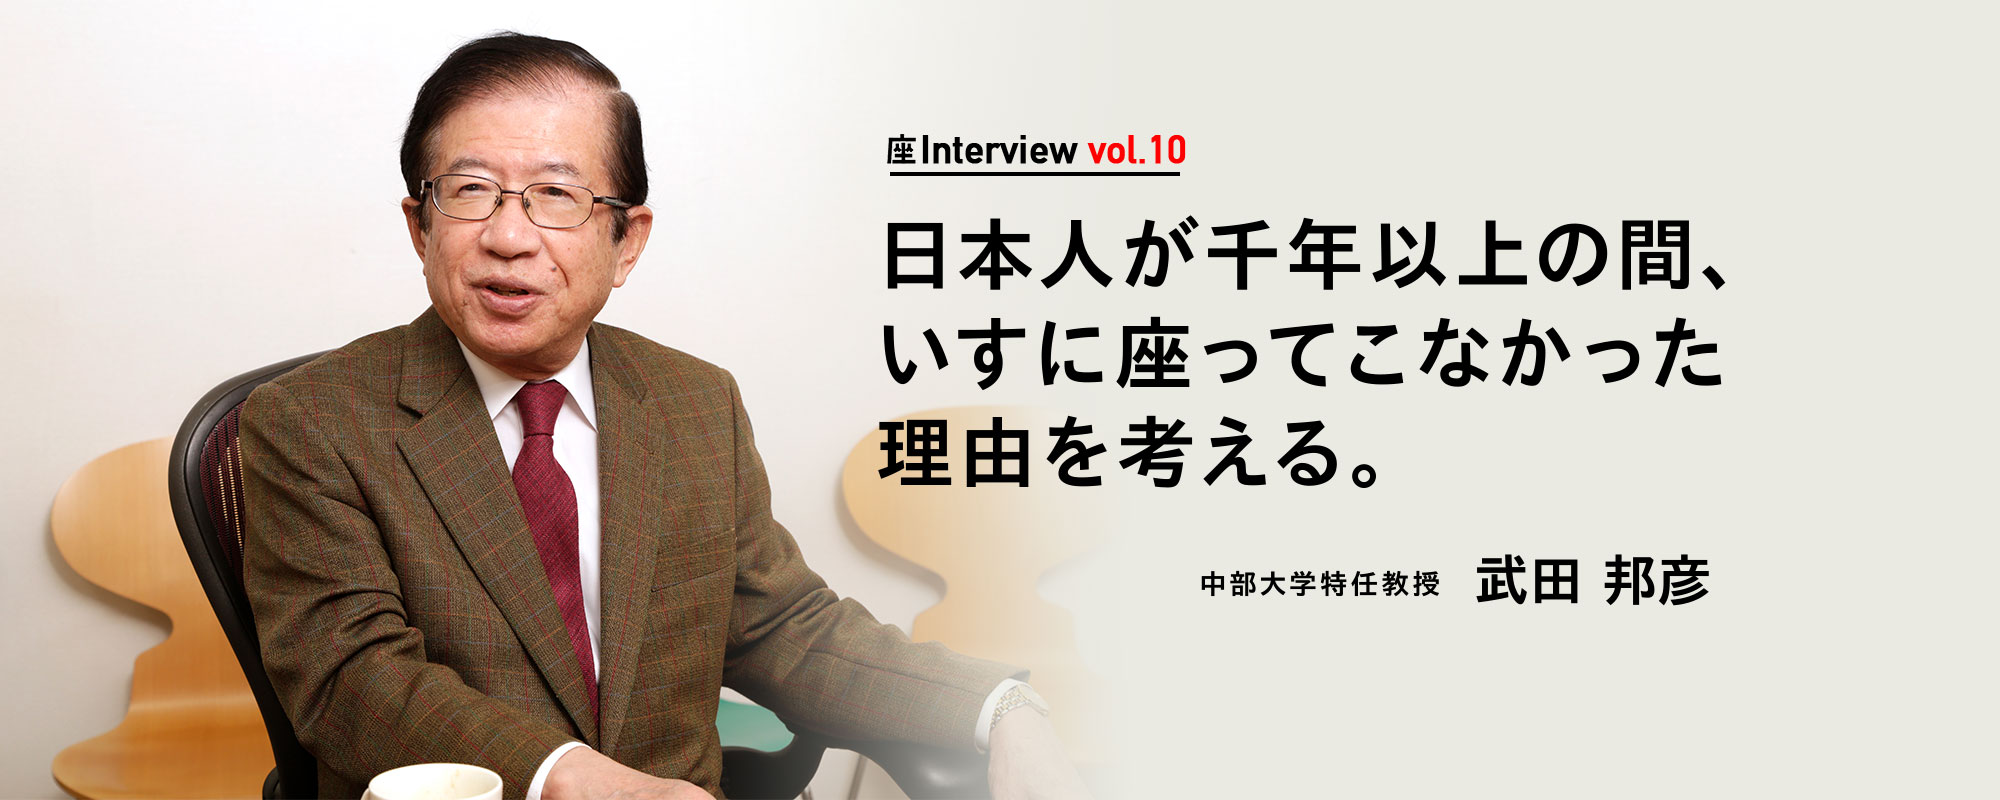 座Interview vol.10 「日本人が千年以上の間、いすに座ってこなかった理由を考える。」中部大学特任教授 武田 邦彦